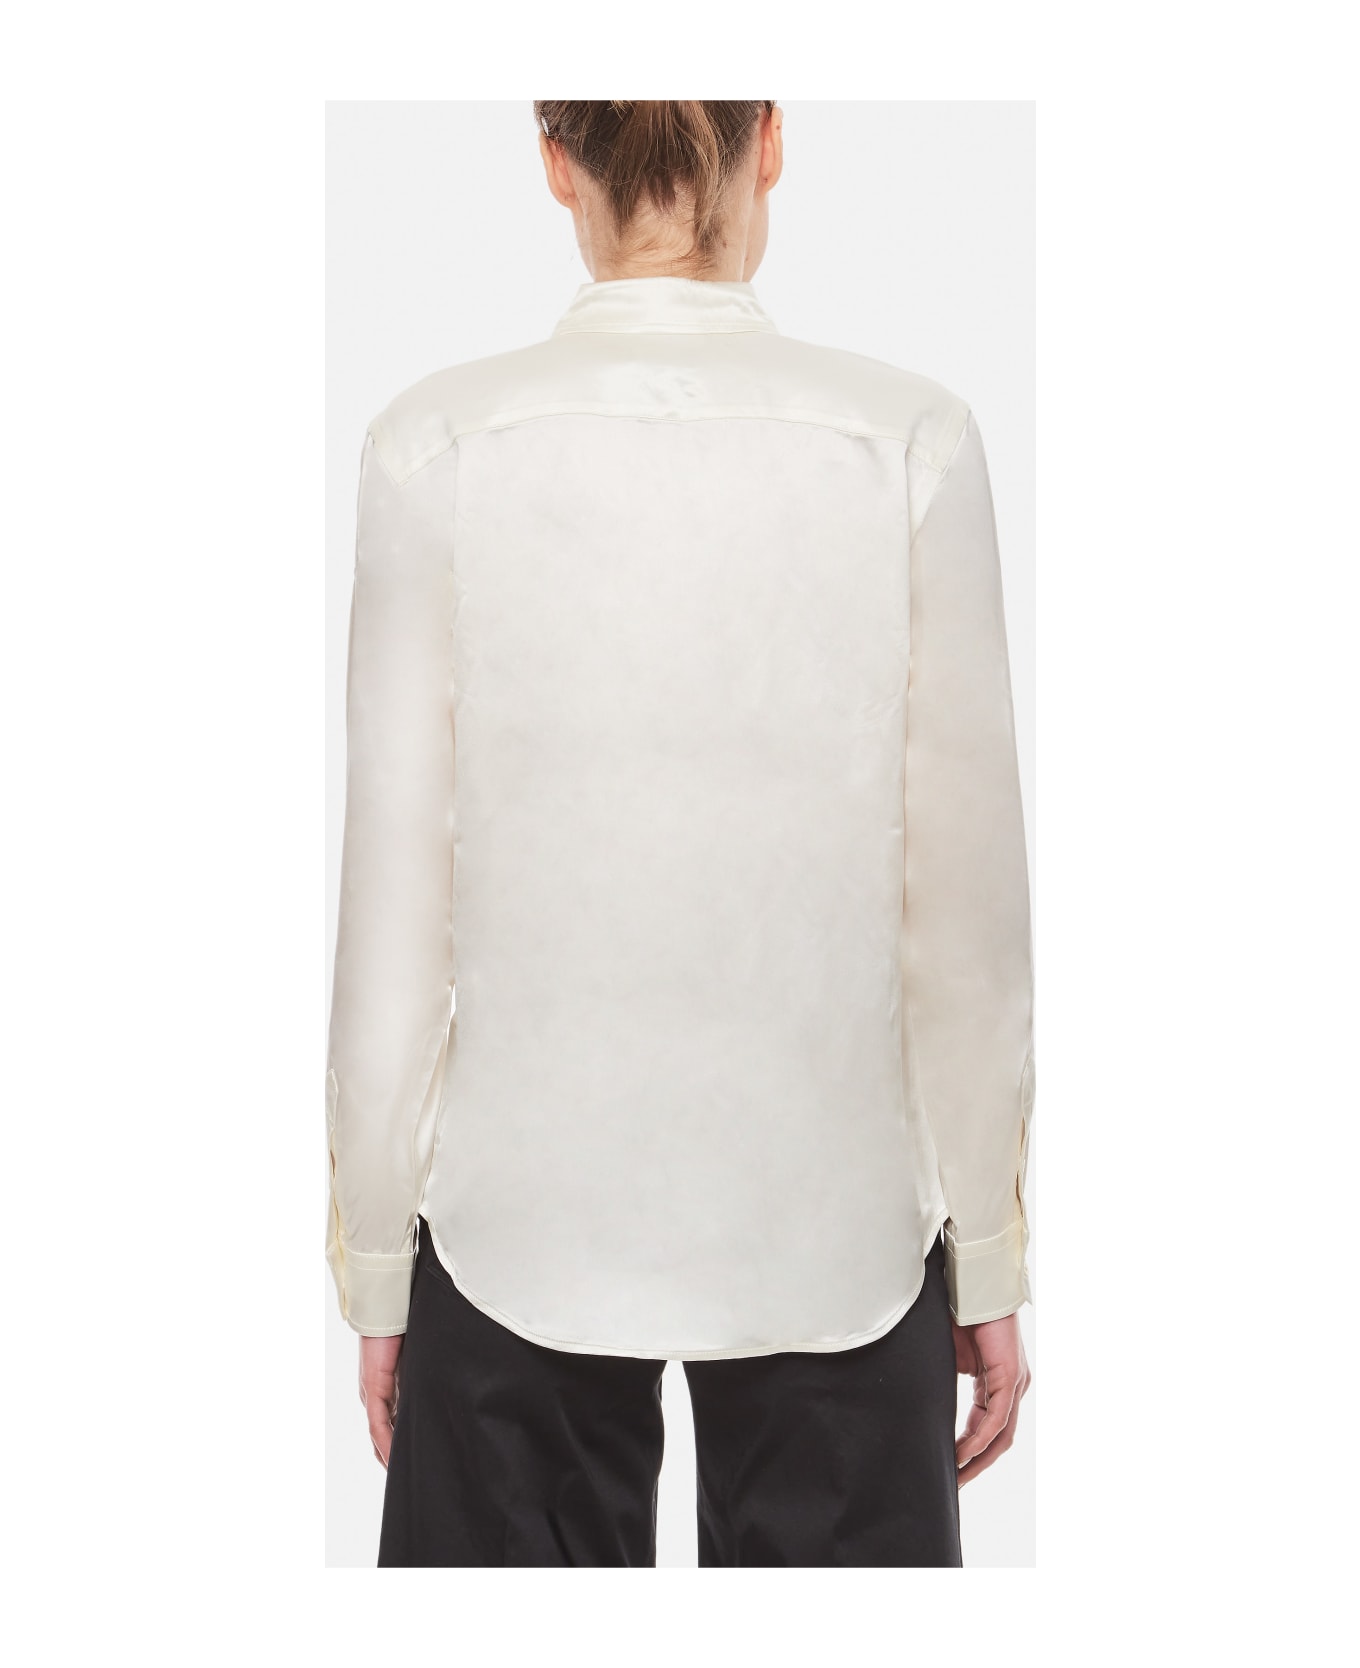 Ralph Lauren Long Sleeve Button Front Shirt - WHITE